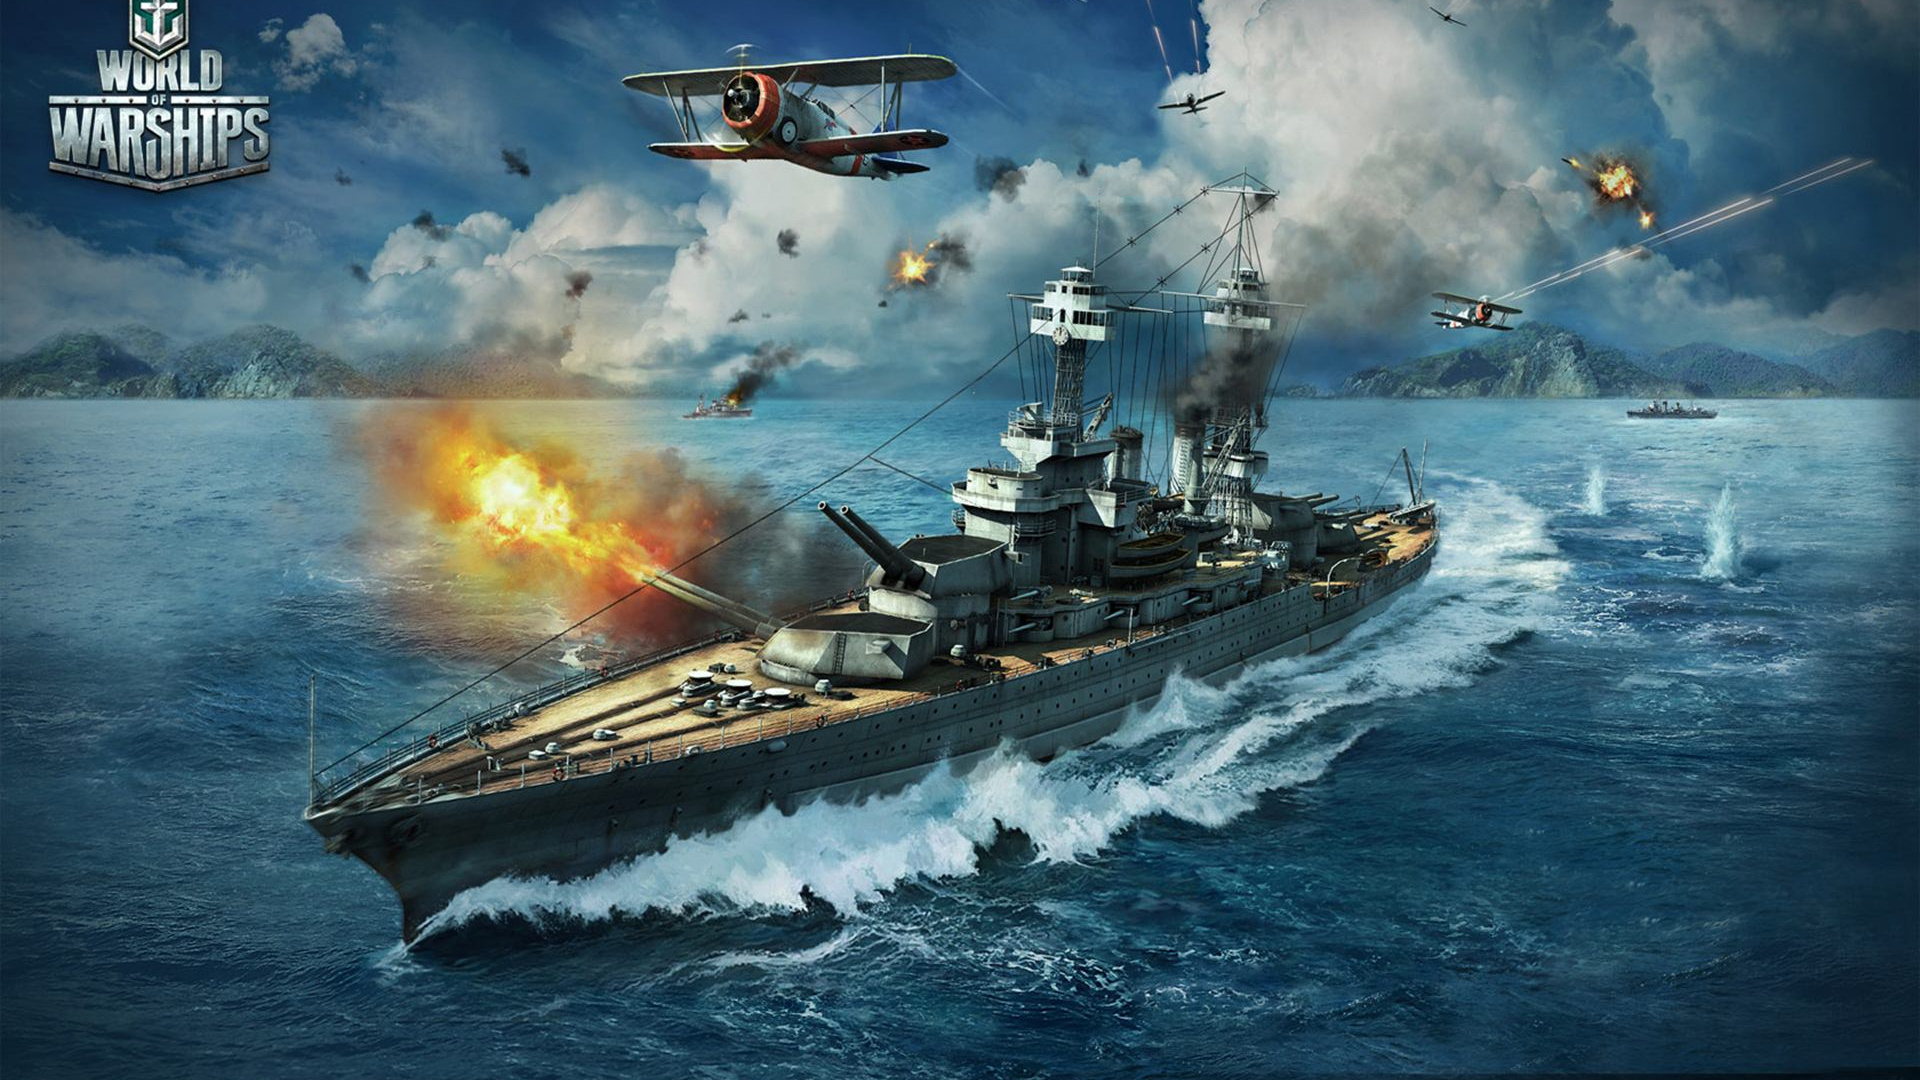 Welt Der Kriegsschiffe, World of Tanks, Kriegsschiff, Massively-multiplayer-online-Spiel, Schlachtschiff. Wallpaper in 1920x1080 Resolution